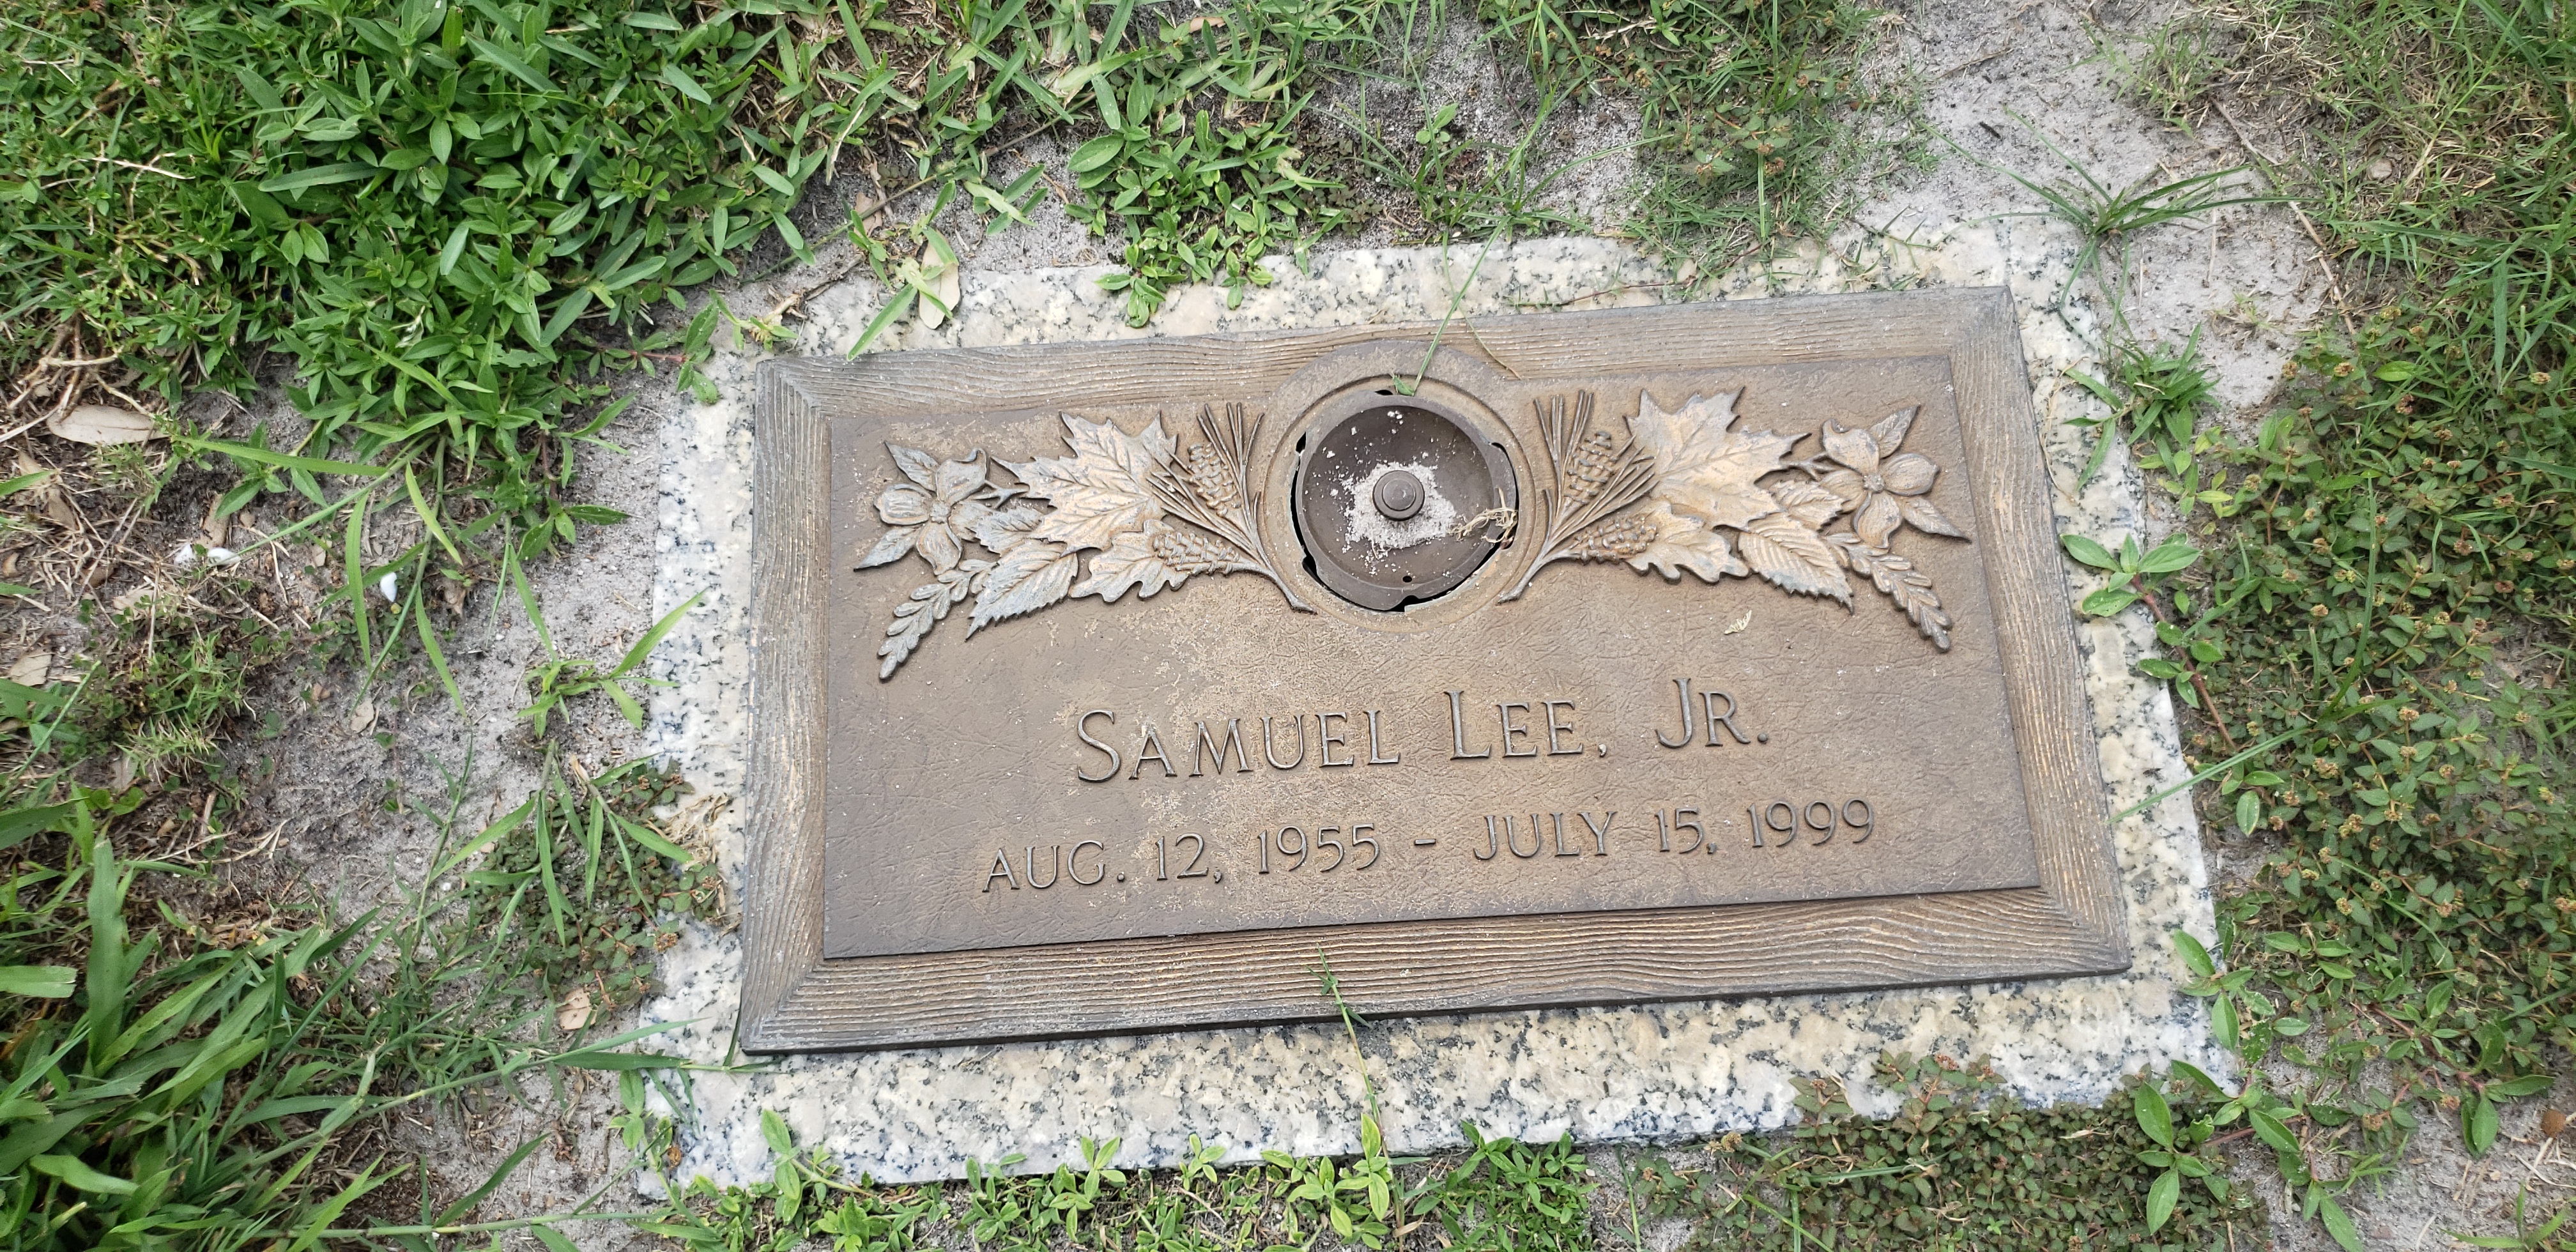 Samuel Lee, Jr